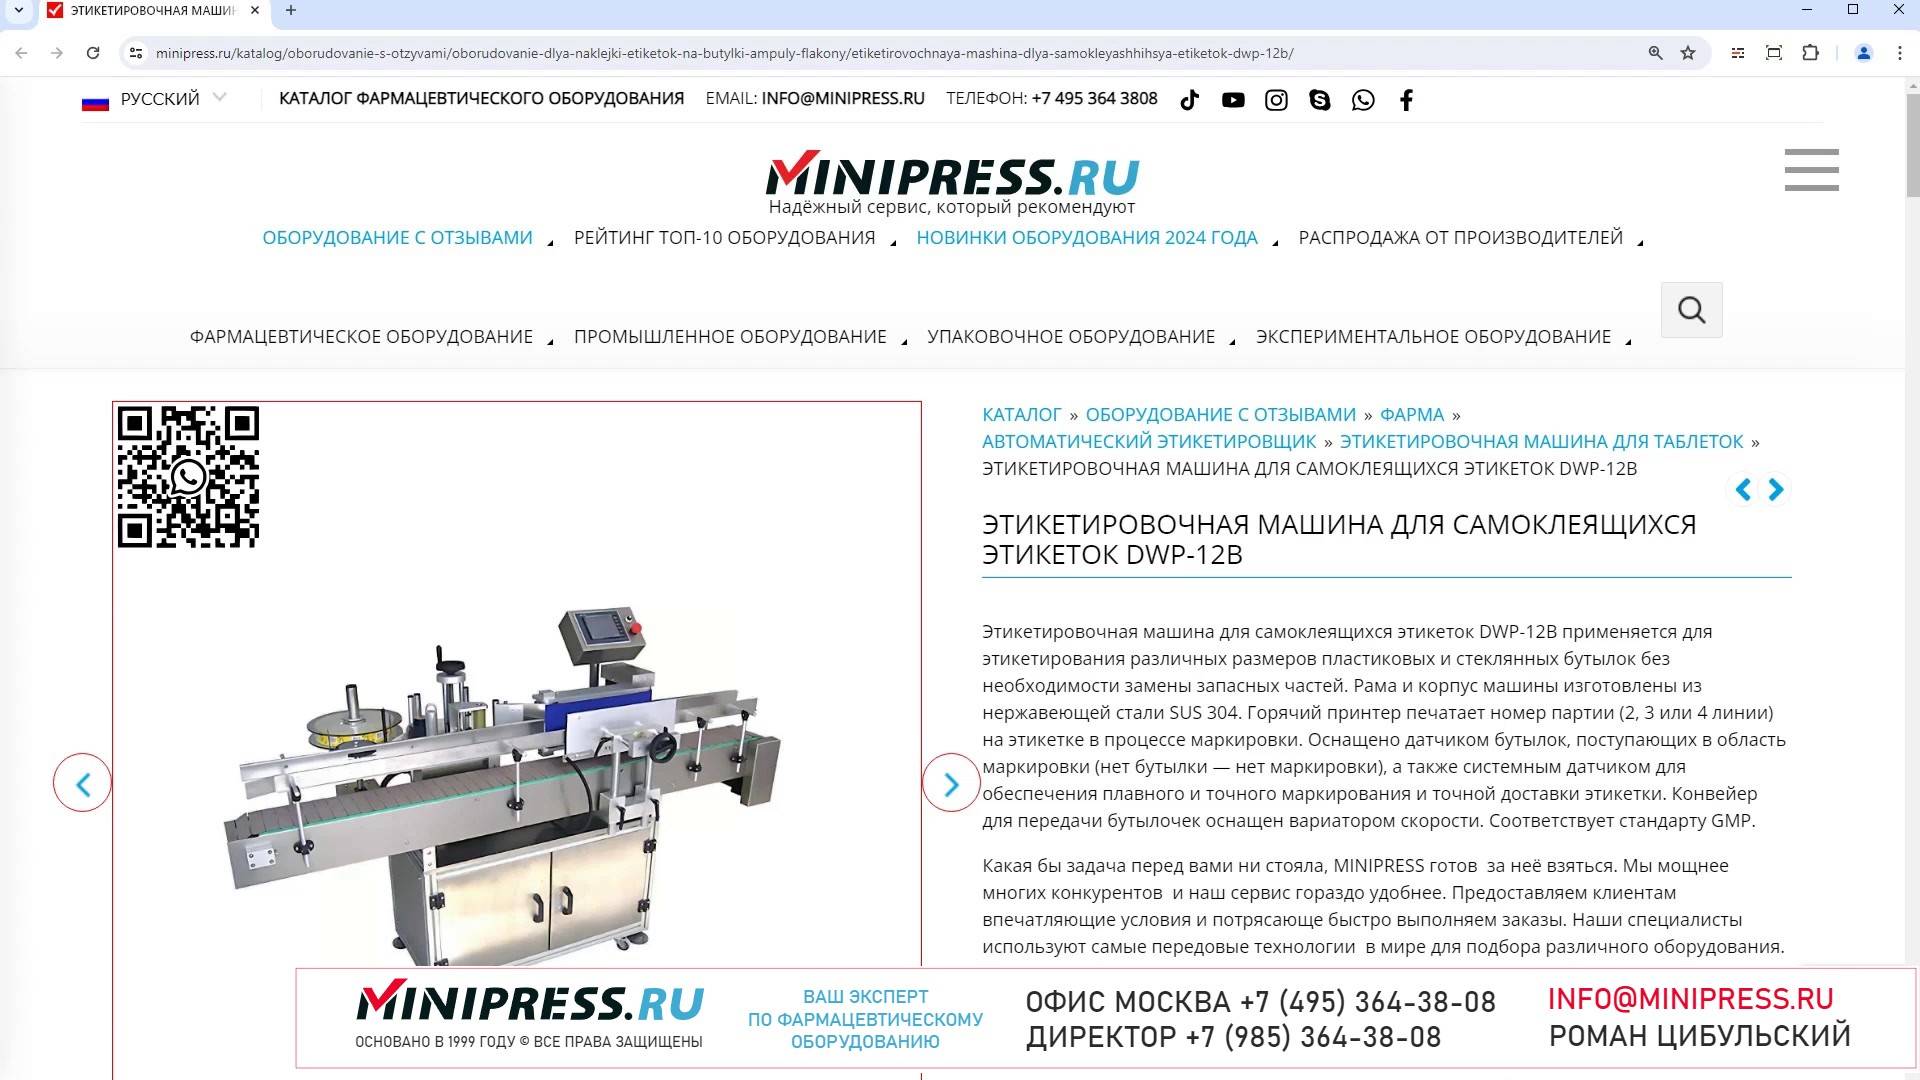 Minipress.ru Этикетировочная машина для самоклеящихся этикеток DWP-12B